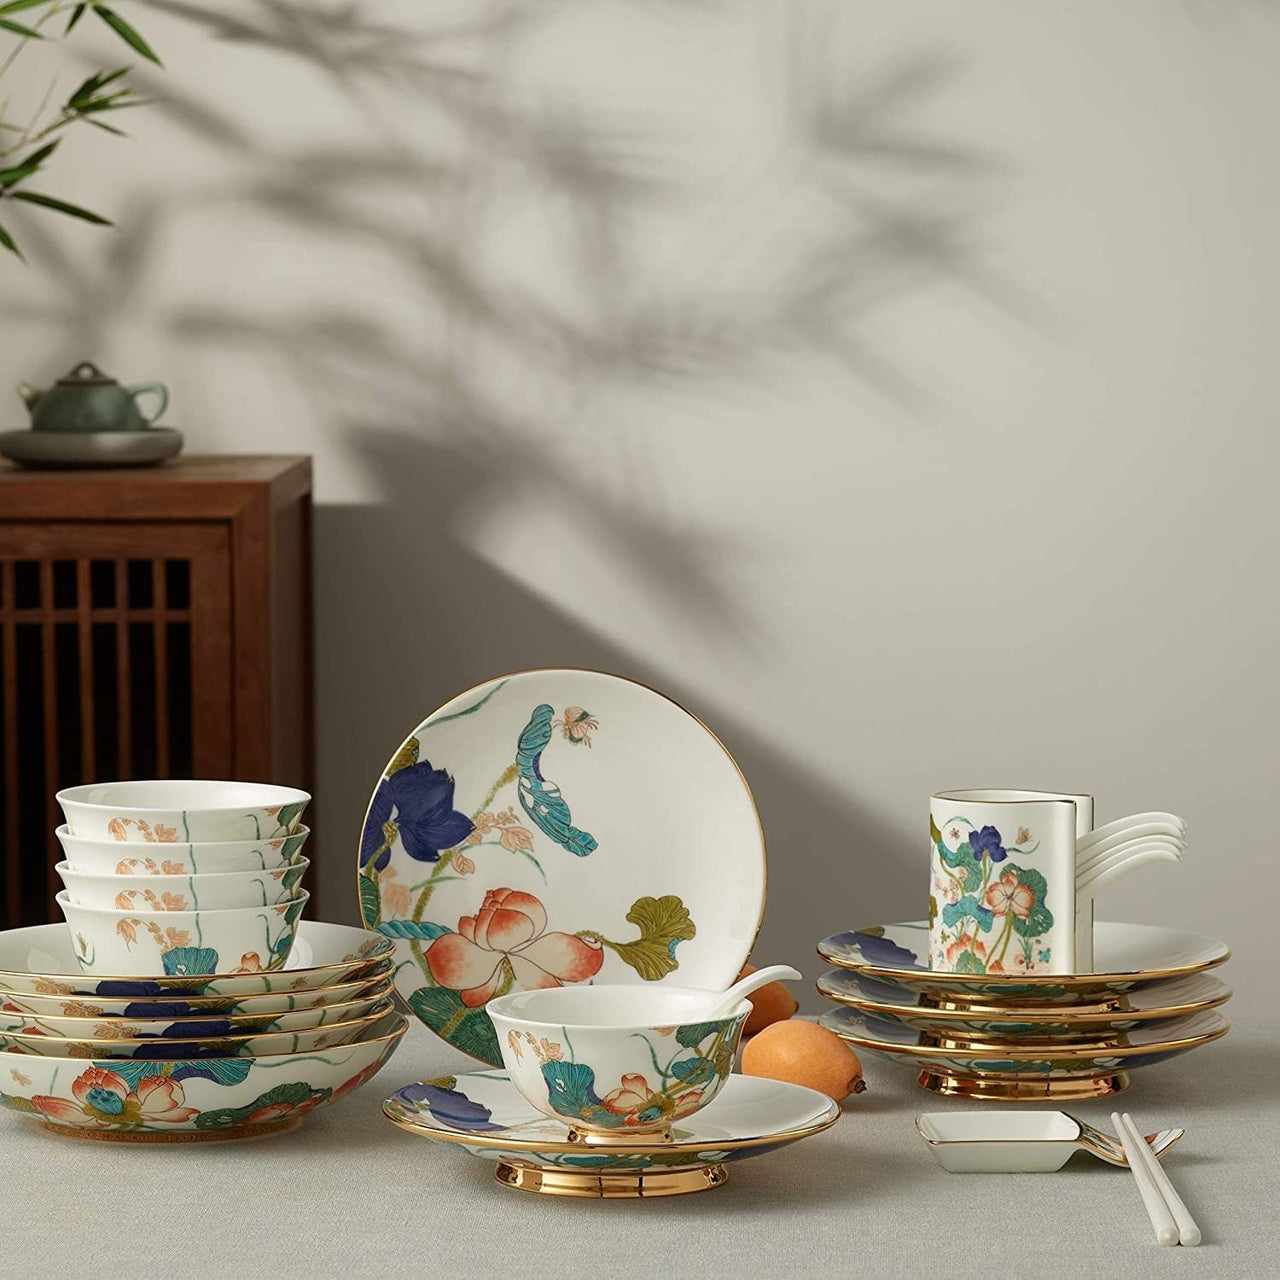 Elegant 31 - Piece Premium Porcelain Dinnerware Set - Casatrail.com